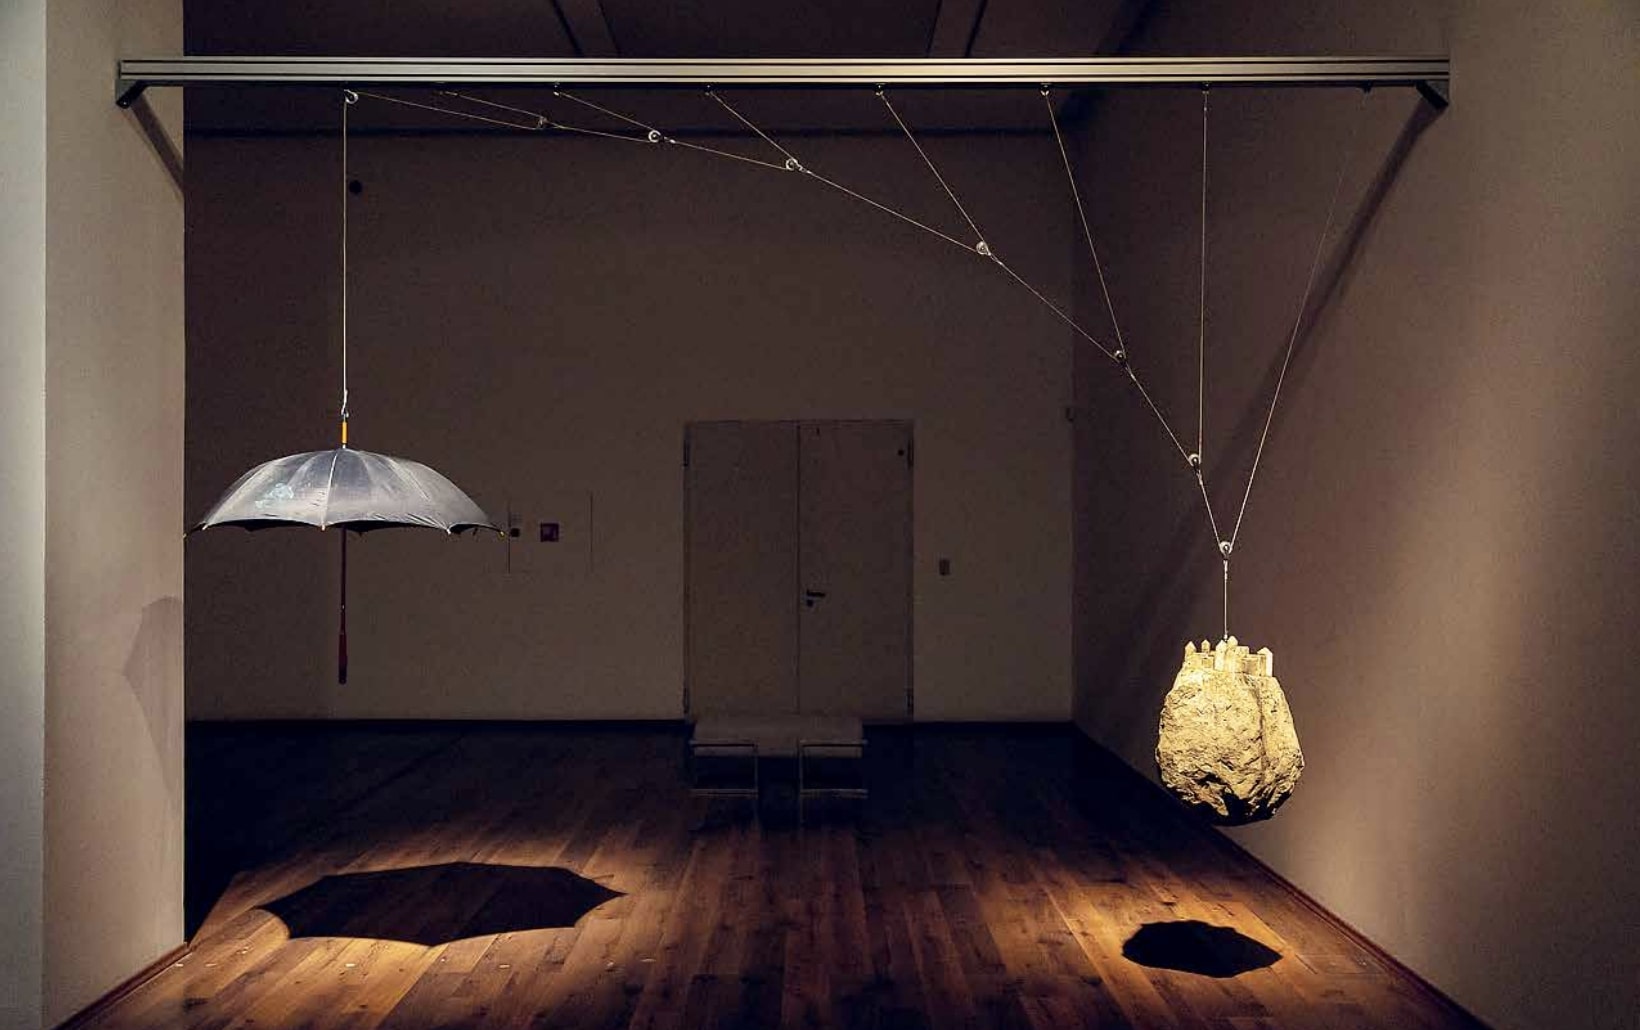 A mű Magritte két festményének – Hegel vakációja (1958) és Kastély a Pireneusokban (1959) – megidézése. Az installációban a festményekből átemelt két tárgy, a pillekönnyű esernyő és a több tíz kilós kő a csigarendszer segítségével egymást tartja lebegésben: ellensúlyozzák egymást. Tasnádi József: Vakáció a Pireneusokban, 2014, installáció, esernyő, kő, csigarendszer, acélsodrony, alumínium, 460 × 100 × 300 cm, fotó: © Dankó Imre / HUNGART © 2022